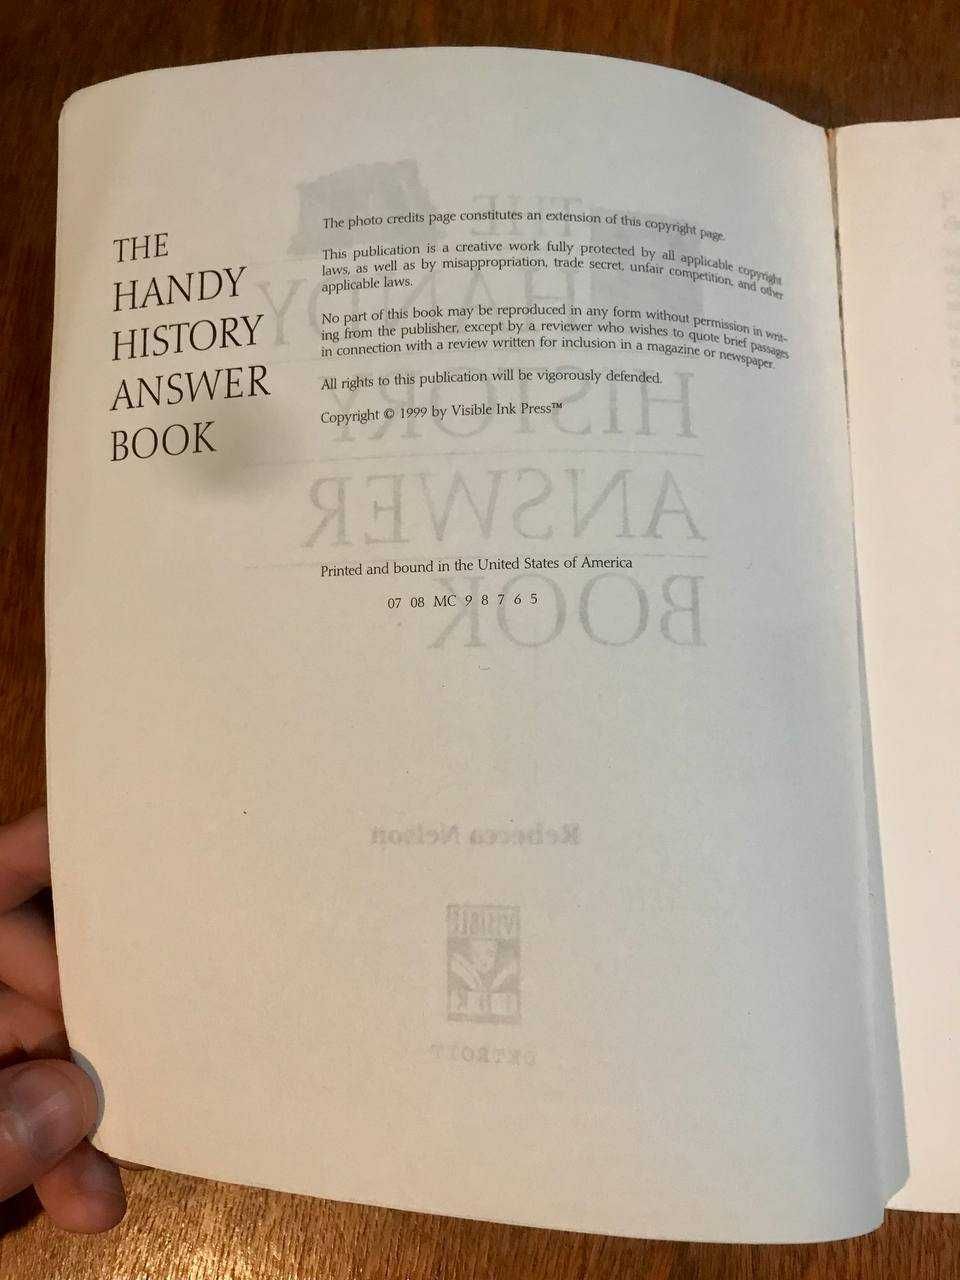 Книга The Handy History Book, Rebecca Nelson енциклопедія історії